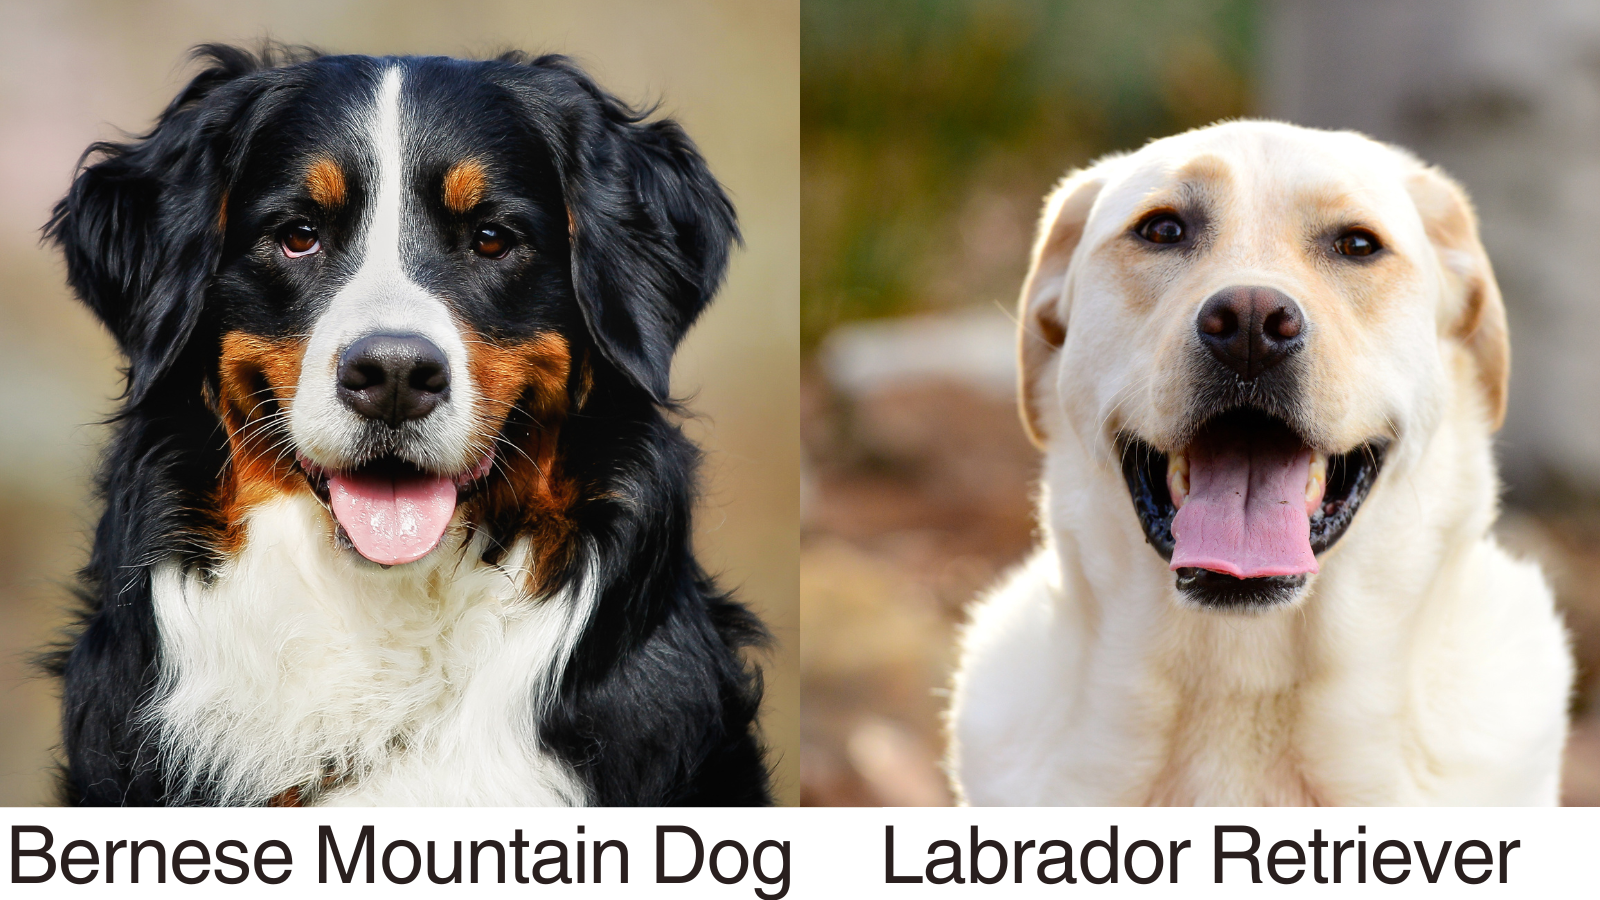 A Photo Collage of a Bernese Mountain Dog and a Labrador Retriever